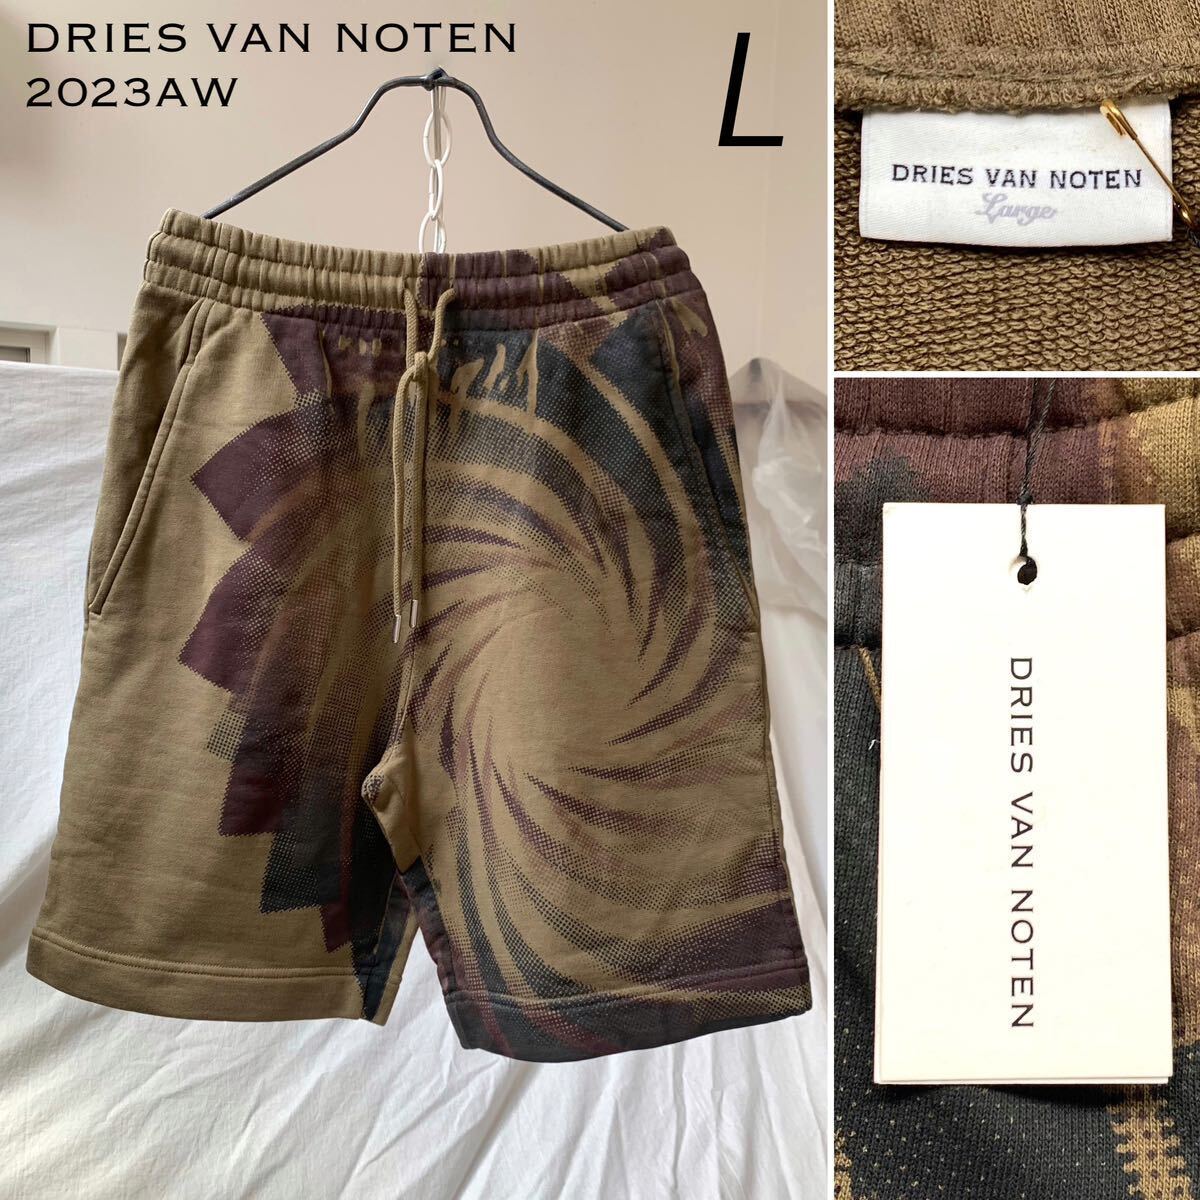  новый товар 2023AW Dries Van Noten DRIES VAN NOTEN графика принт тренировочный шорты HABOR шорты шорты L